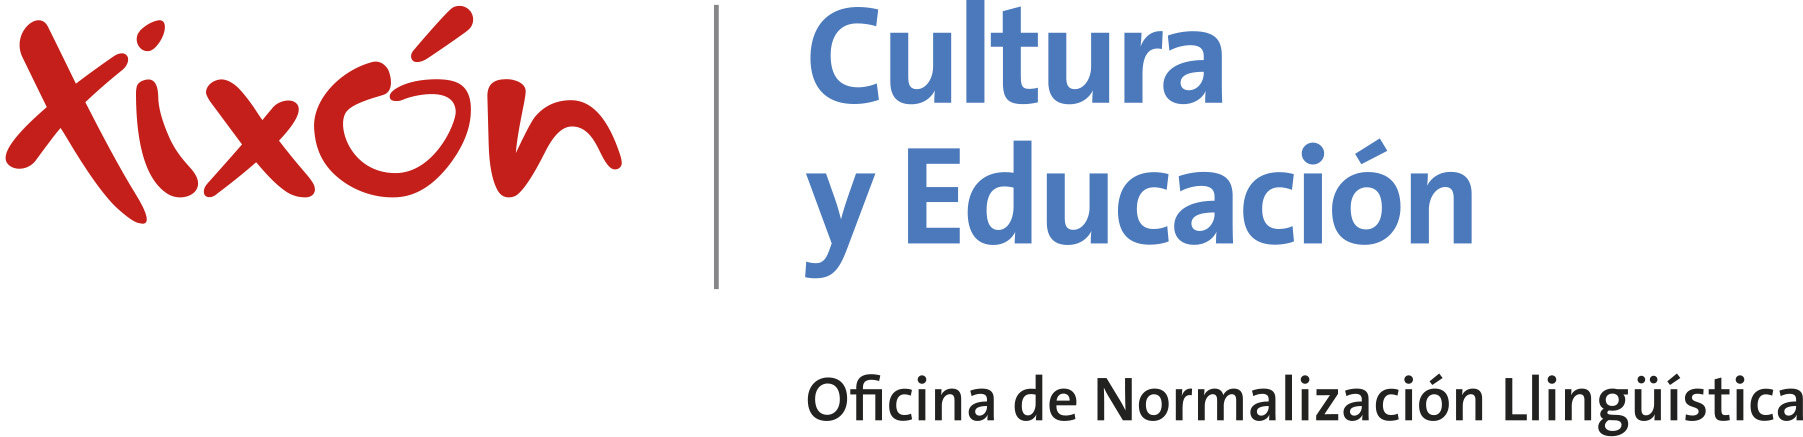 Xixón | Educación y Cultura - Oficina de normalización llingüística